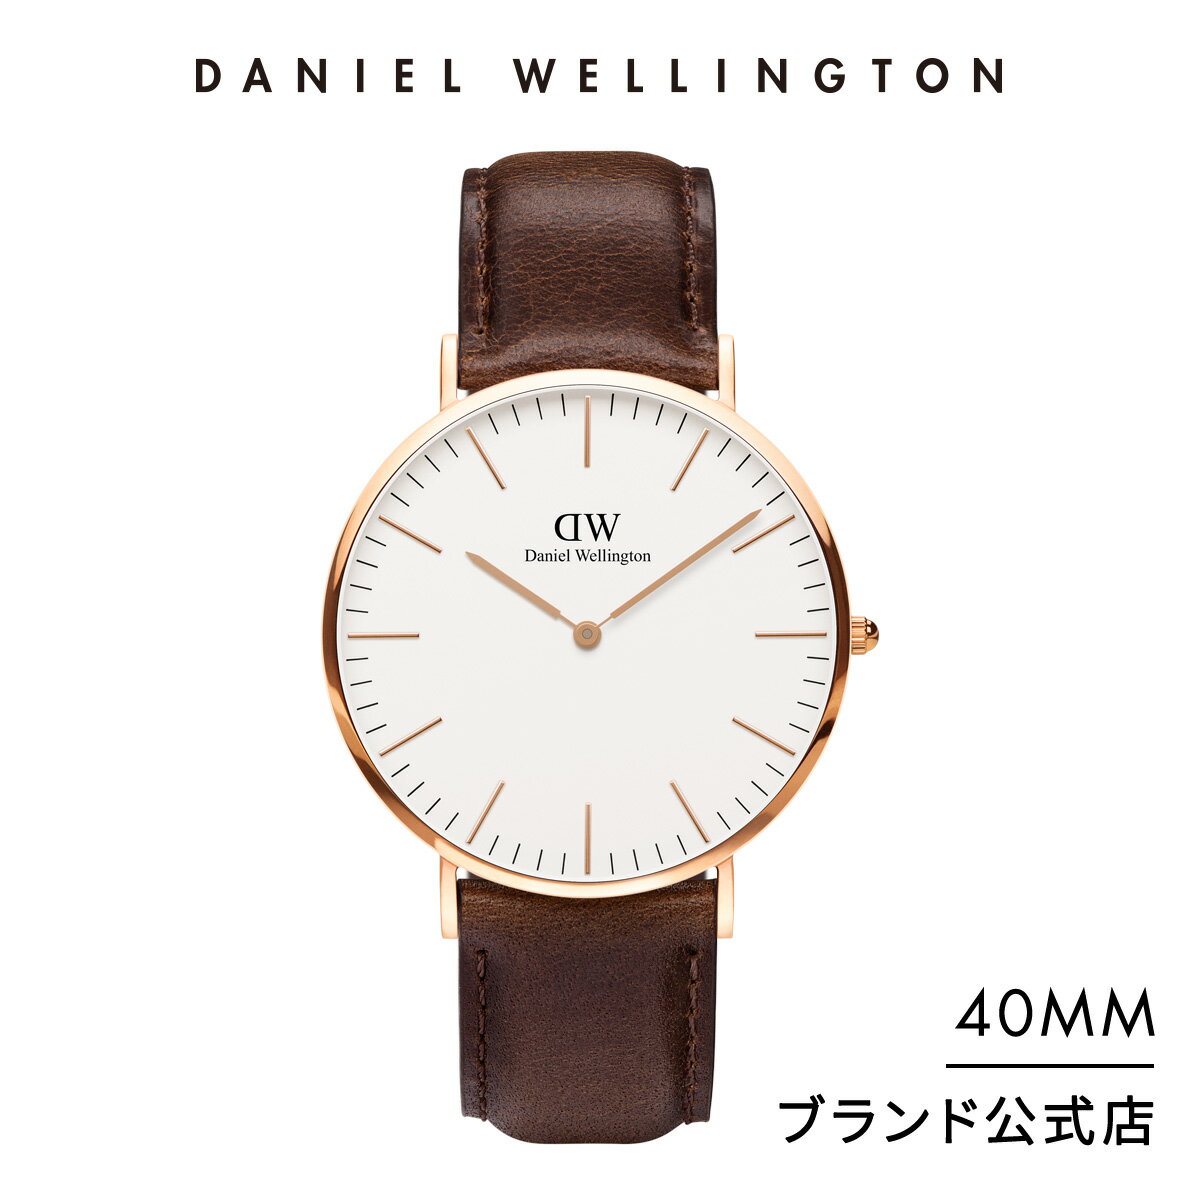 ダニエルウェリントンのメンズ腕時計おすすめ 人気ランキングtop10 22年最新版 ベストプレゼントガイド